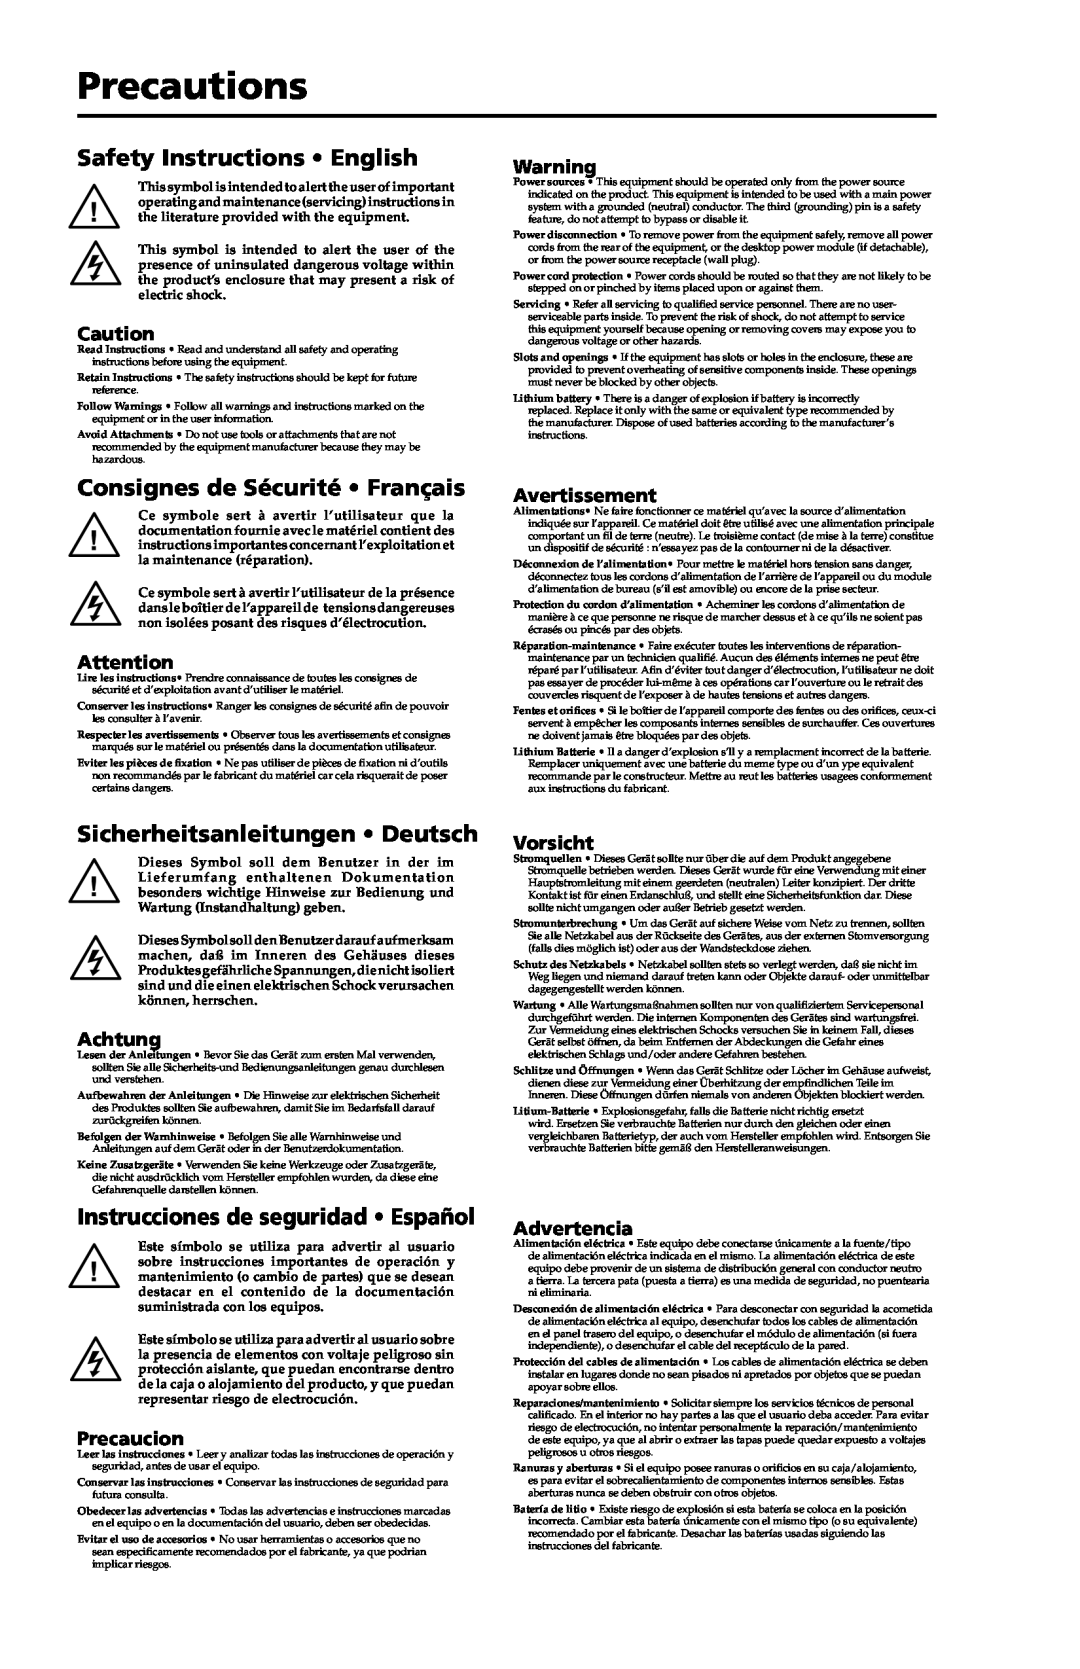 Extron electronic MLC 104 Plus Series Precautions, Safety Instructions English, Consignes de Sécurité Français, Achtung 